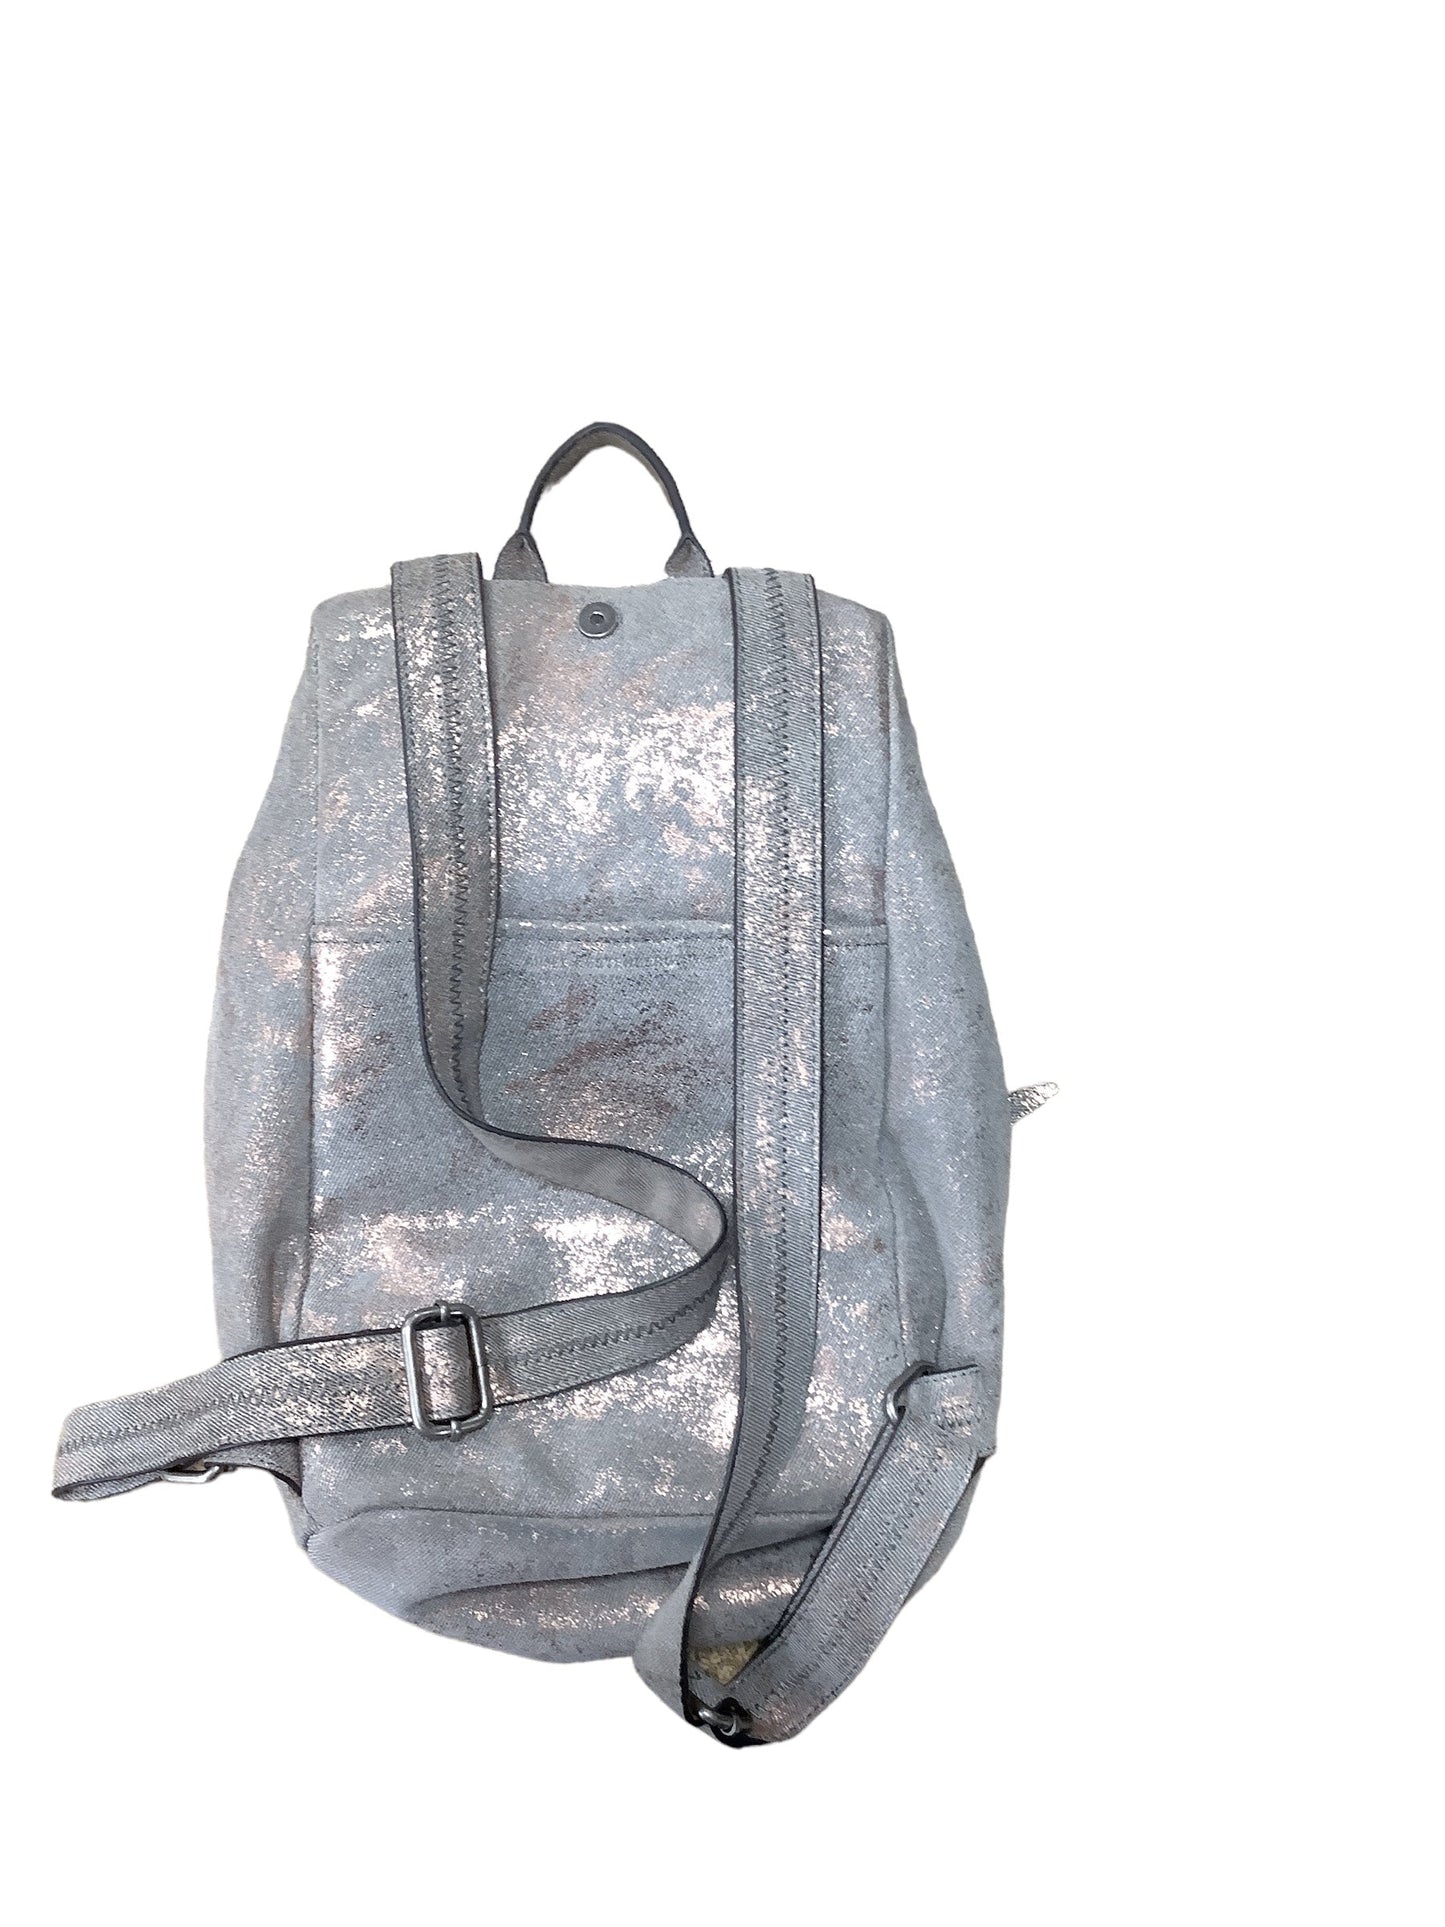 Backpack Designer By Aimee Kestenberg  Size: Medium